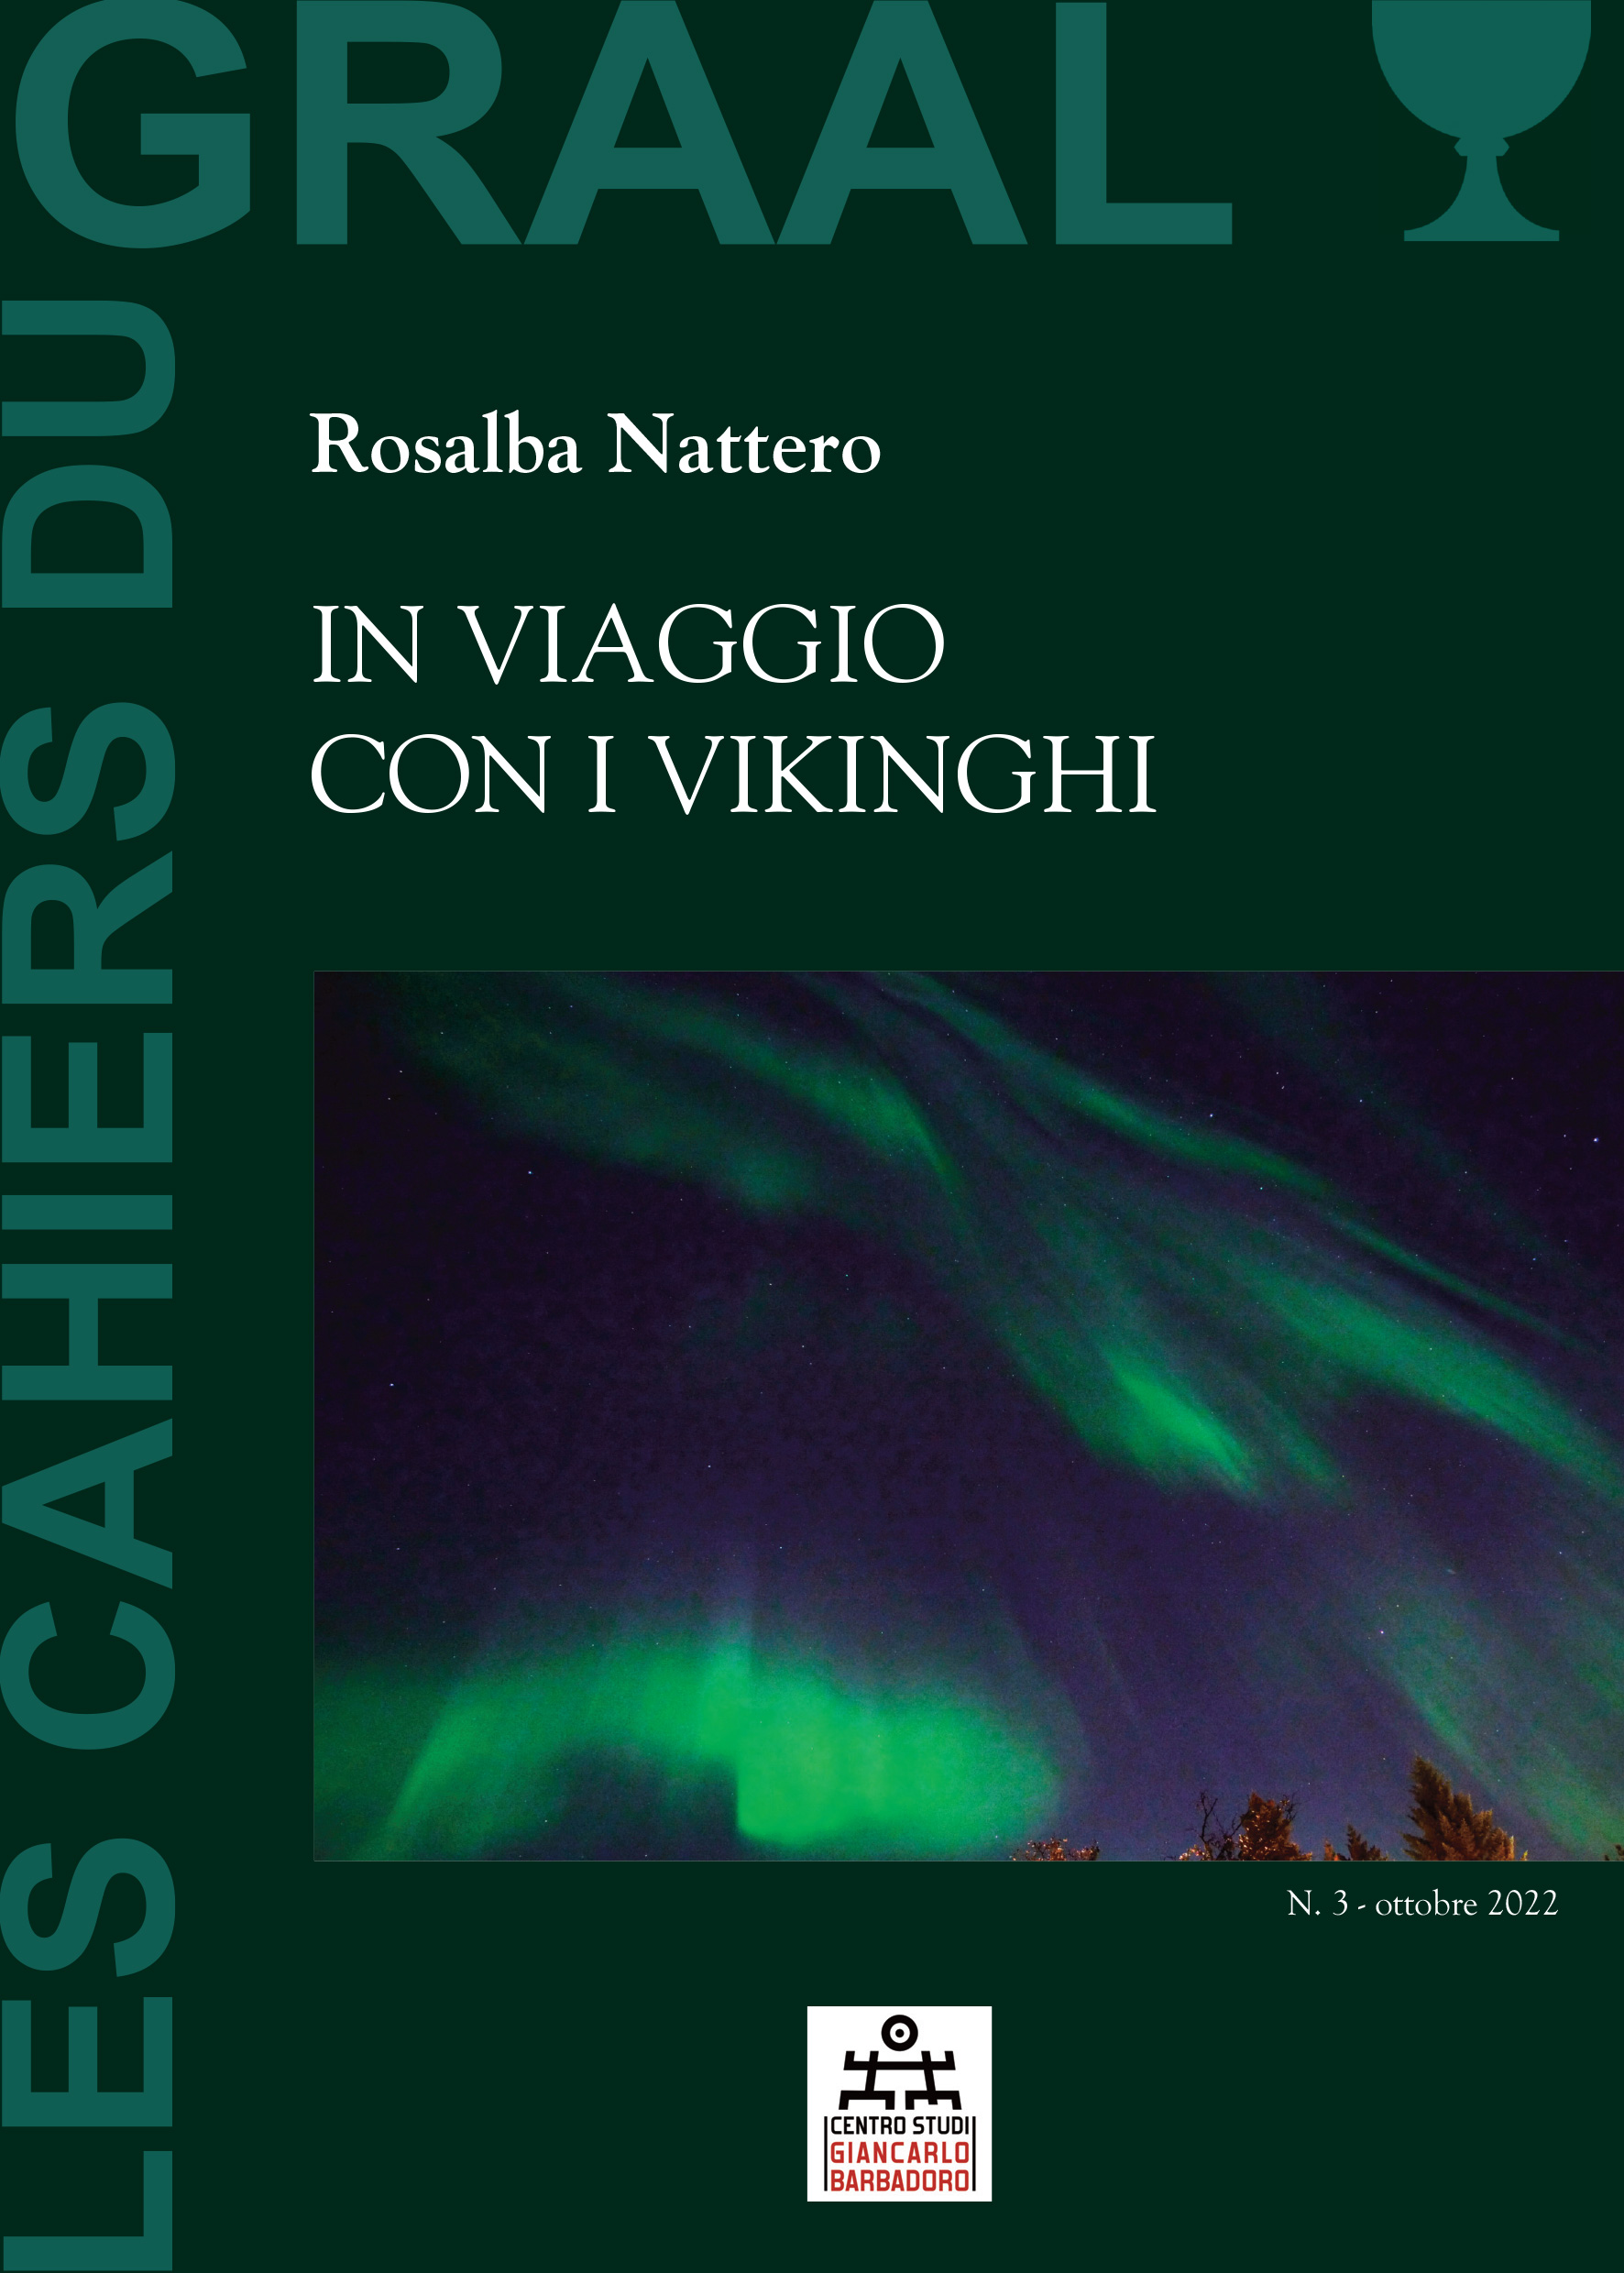 Les Cahiers du GRAAL Numero 3 - Ottobre 2022 - Rosalba Nattero - IN VIAGGIO CON I VIKINGHI